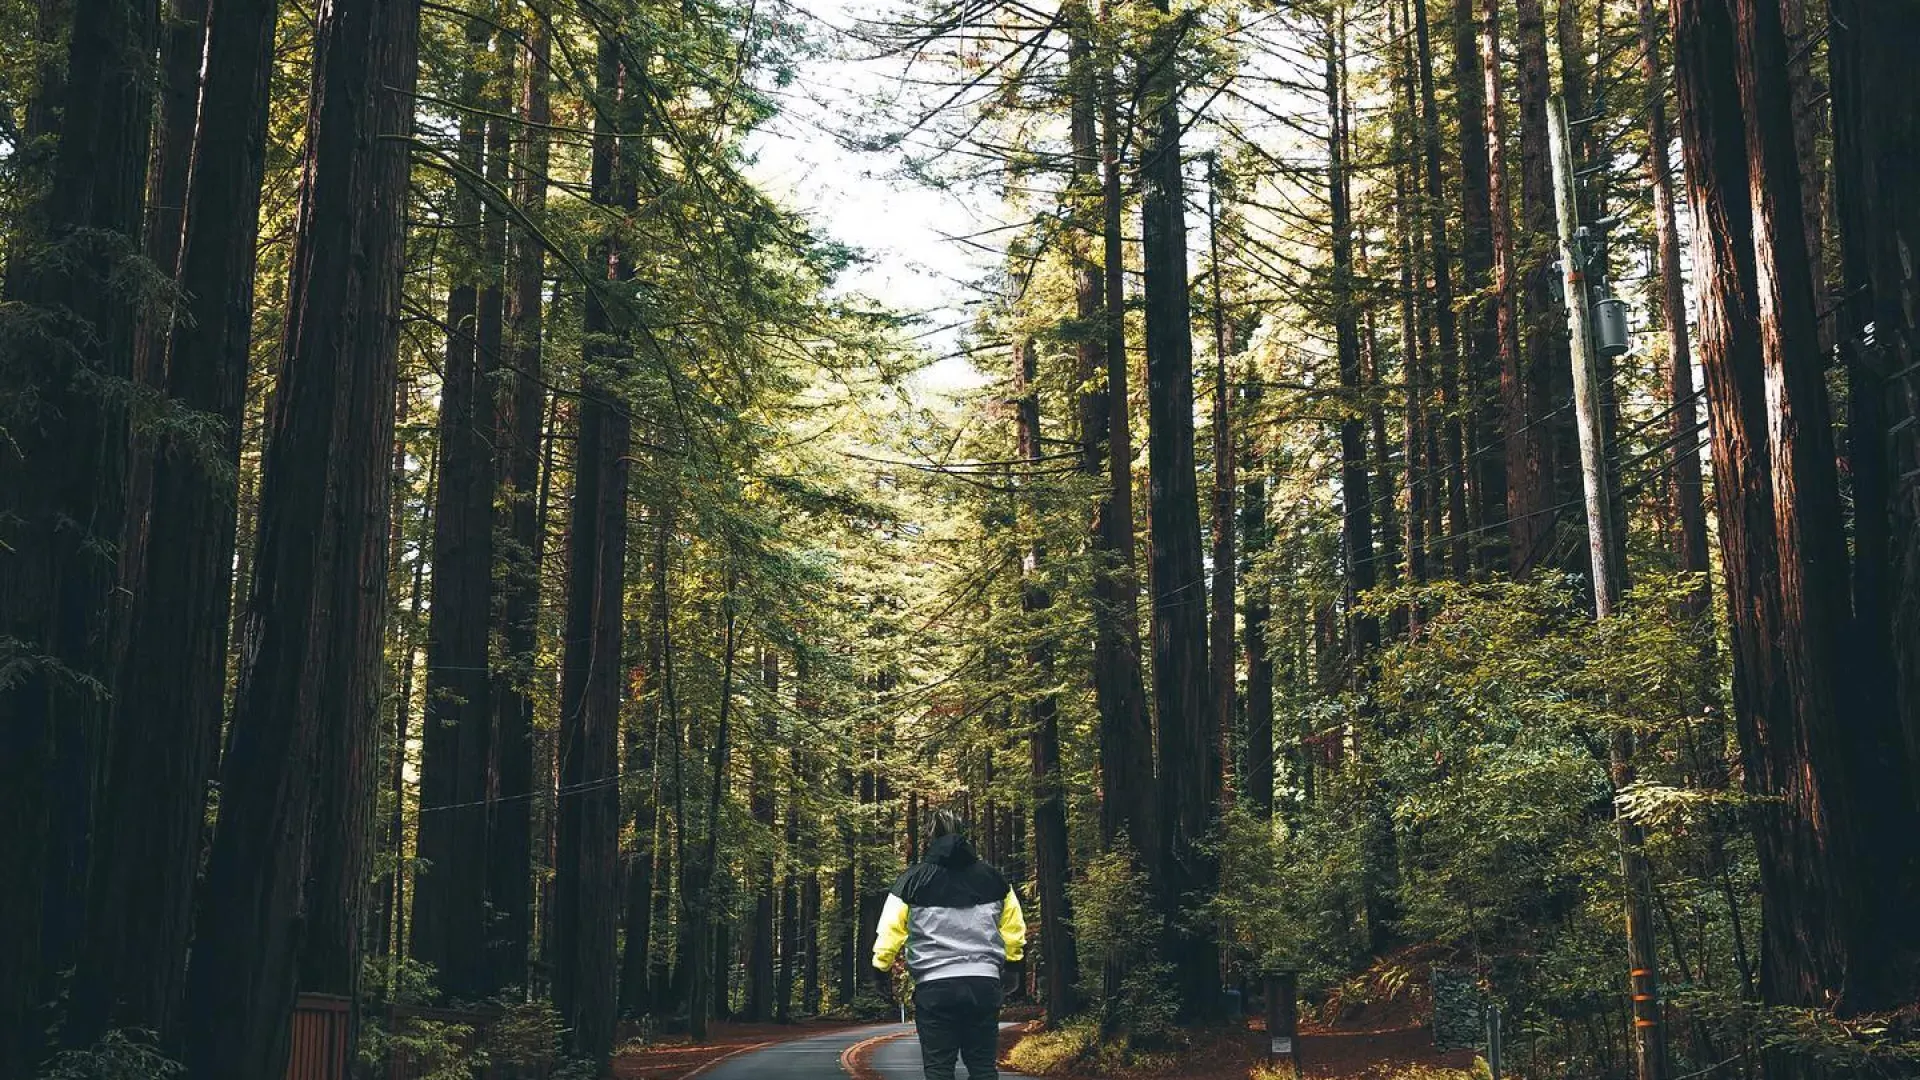 一个男人背对着镜头站在一条穿过高大红杉的路上。. 